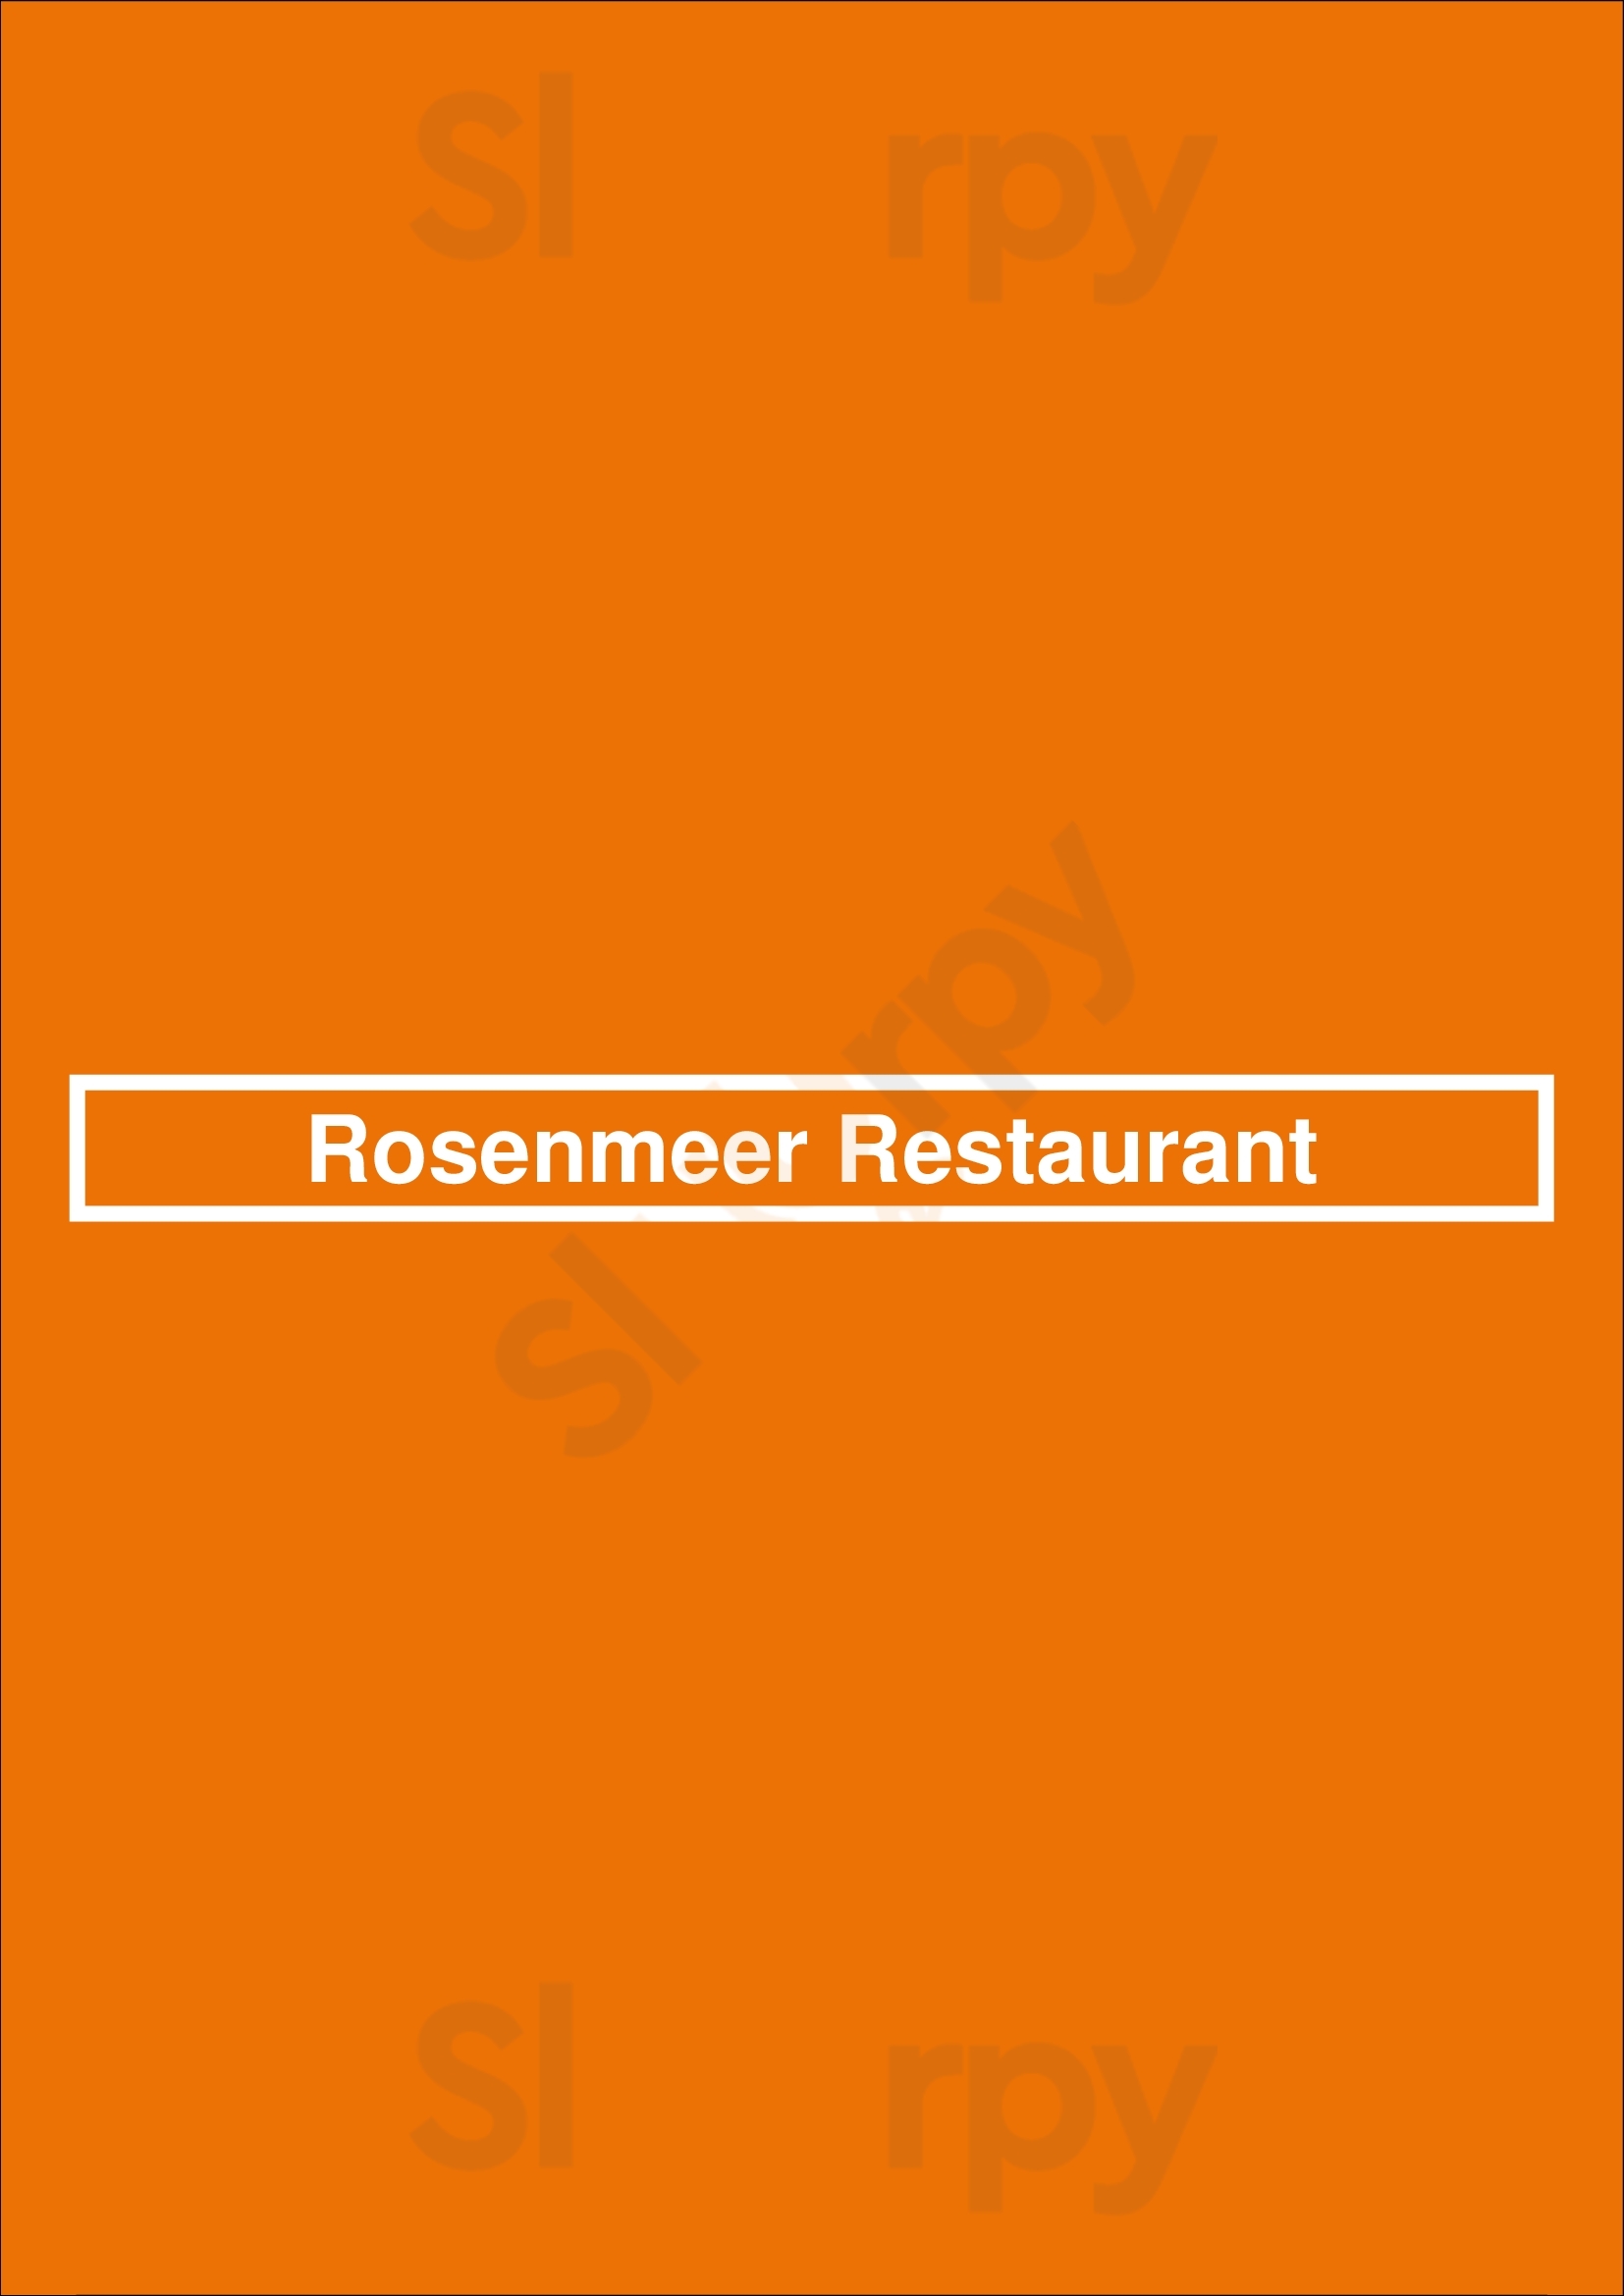 Rosenmeer Restaurant Mönchengladbach Menu - 1